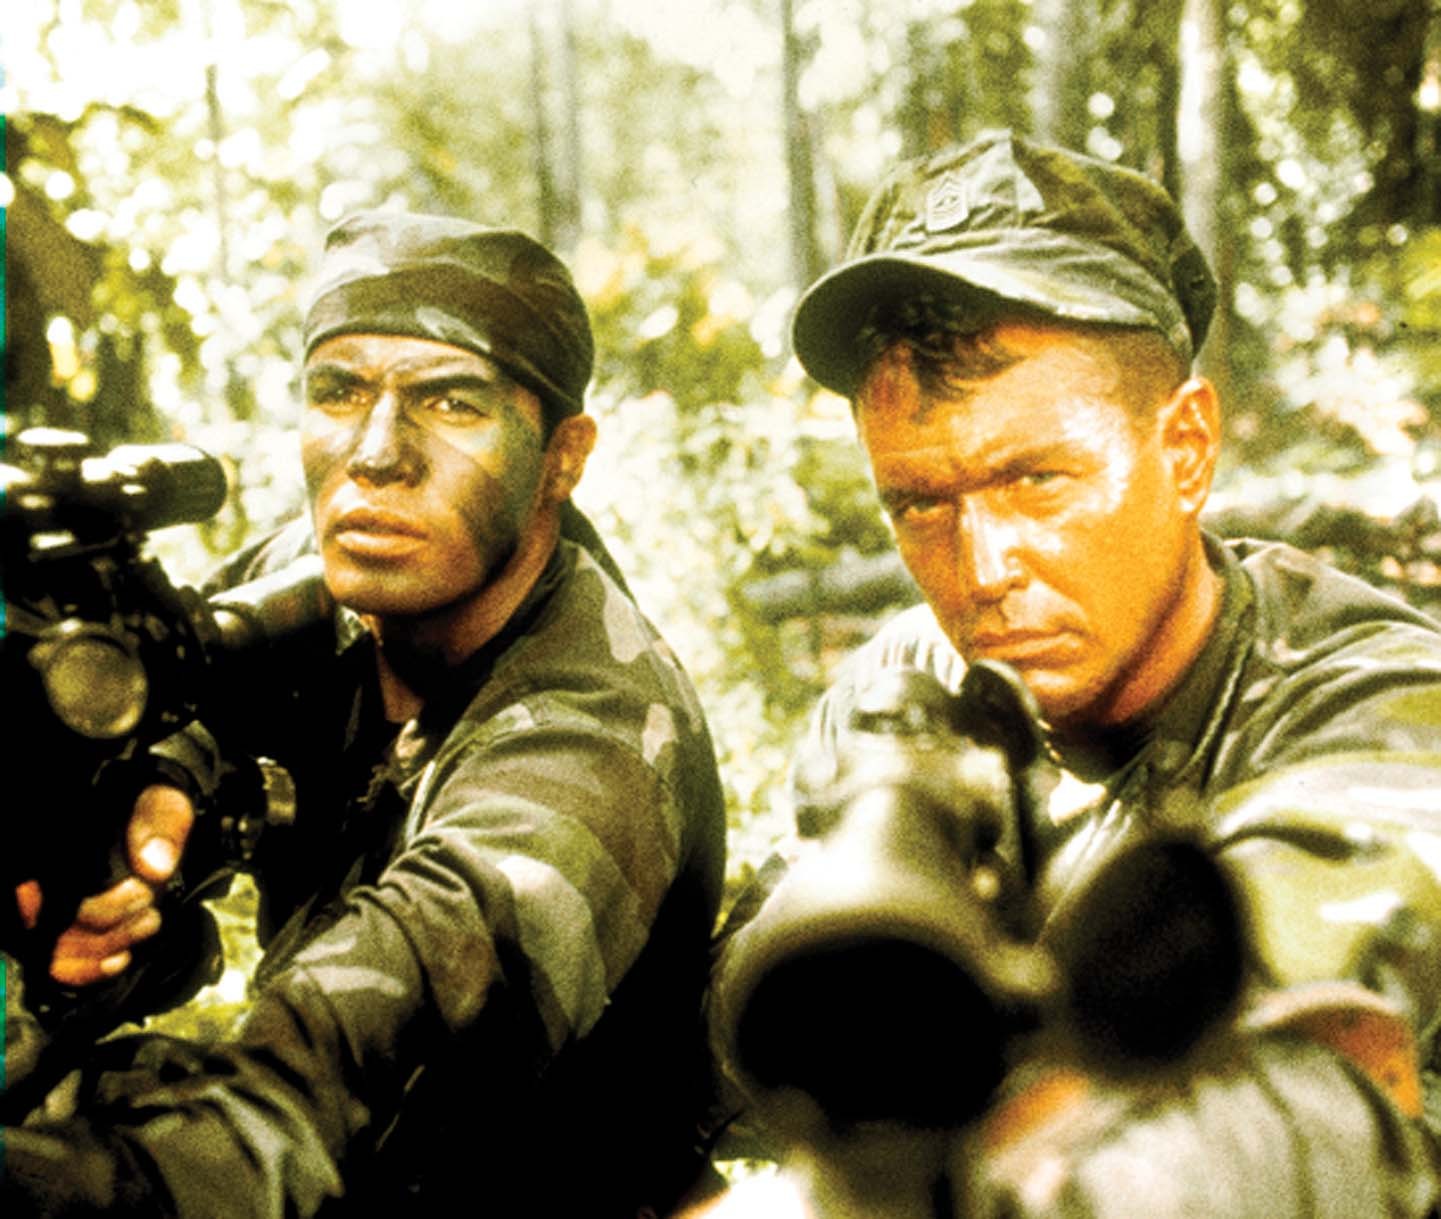 หนังน่าดู :  Sniper (1993)  นักฆ่าเลือดเย็น